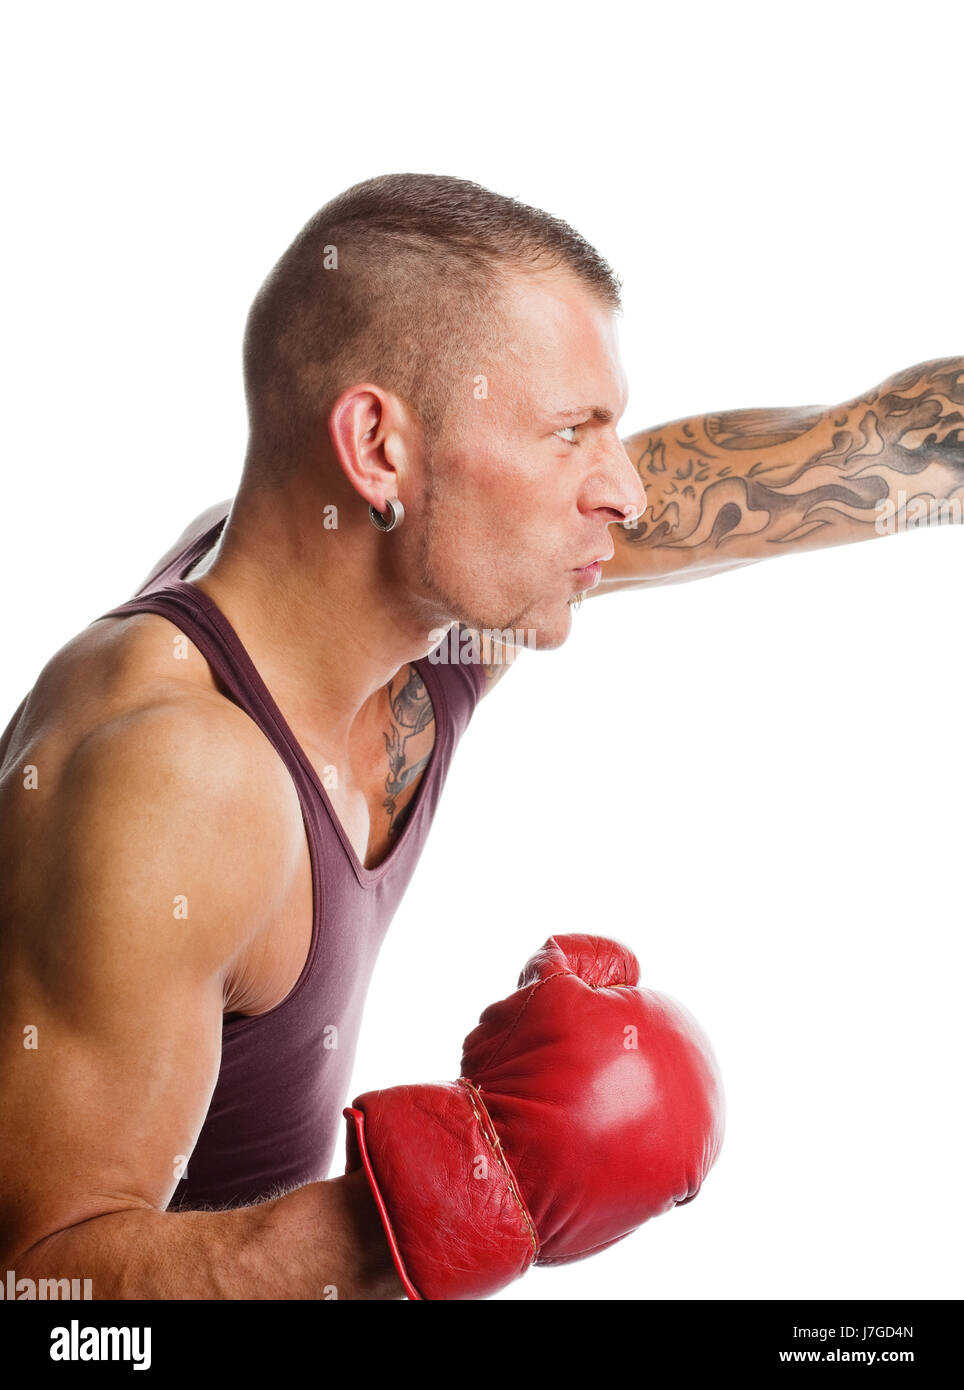 Fighting stronger. Фото боксера с ударом на фотографа. Фото боксера с поднятой рукой задний план.